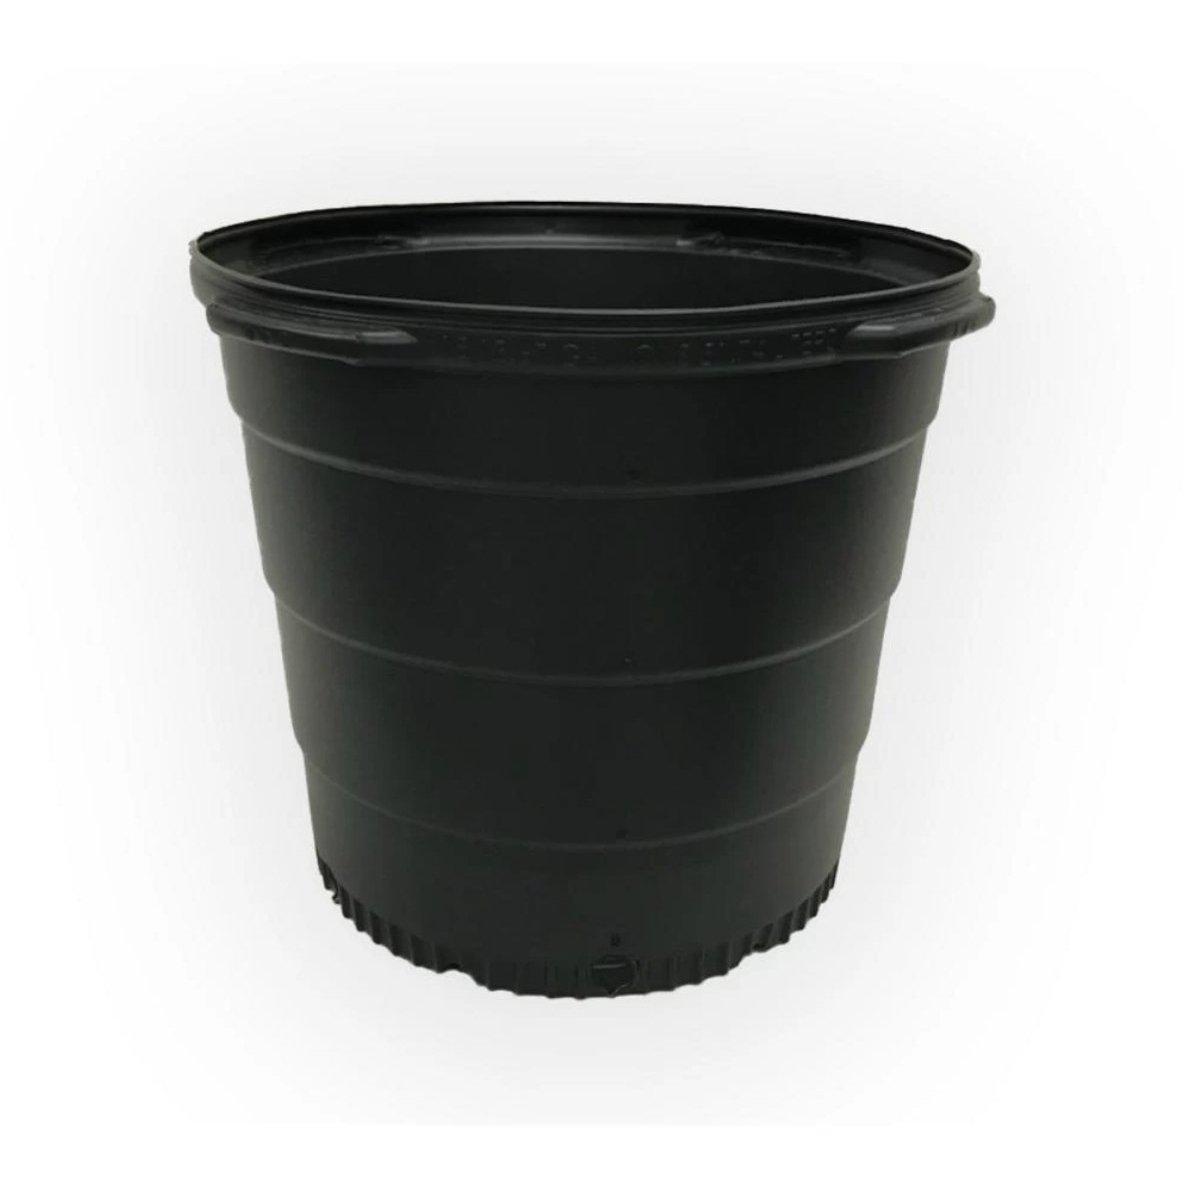 FloraFlex Pot Pro | 5 Gallon Bucket